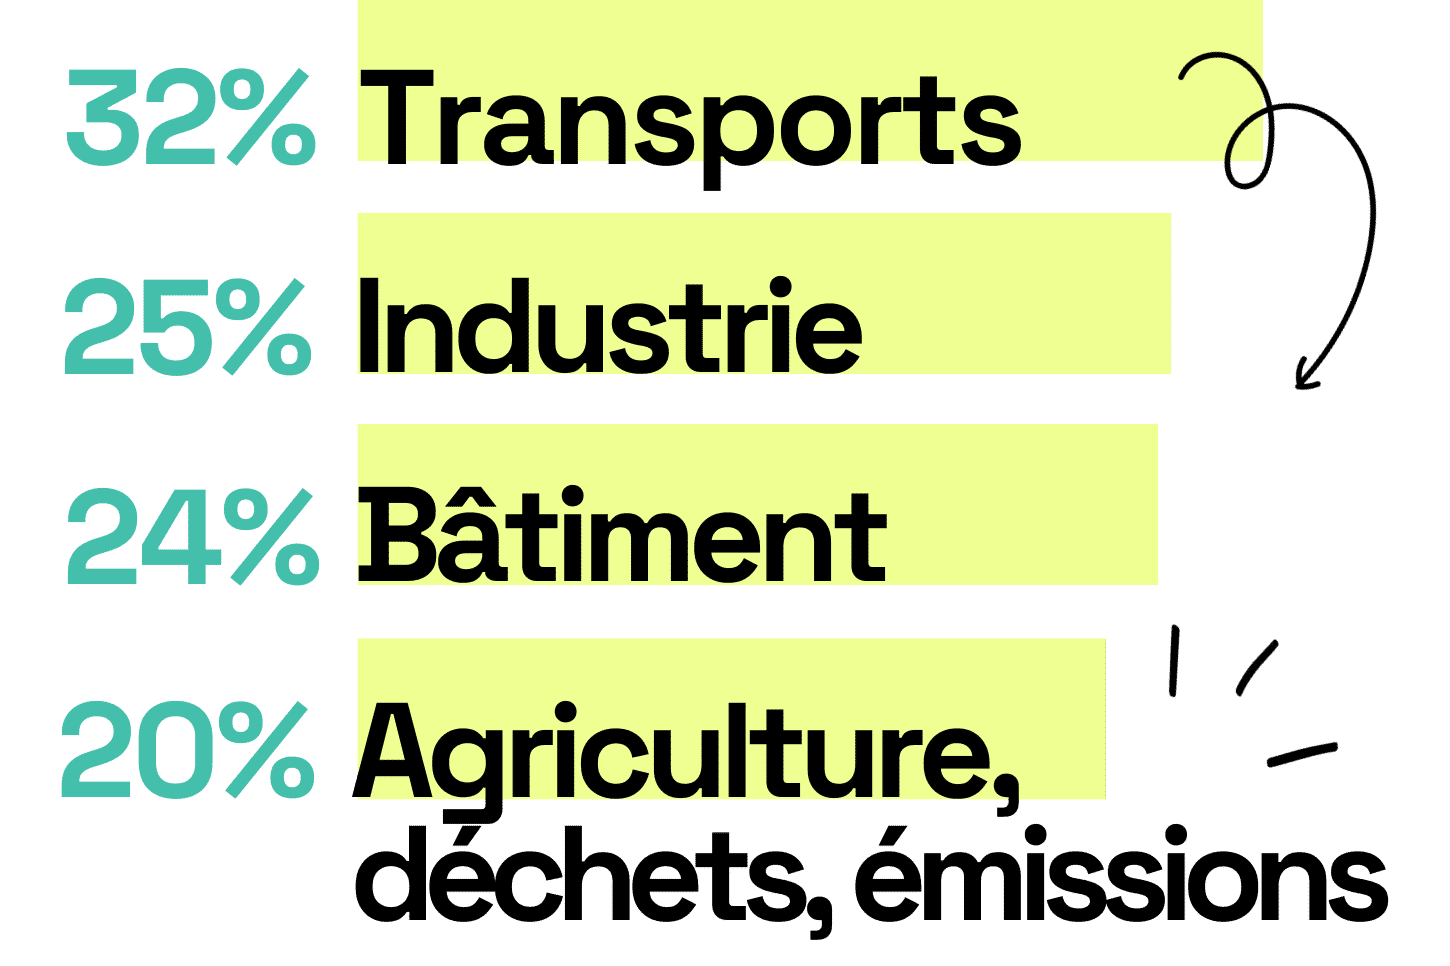 Les responsables des émissions de gaz à effet de serre en Suisse: 32% transports, 25% industrie, 24% bâtiment et 20% agriculture, déchets, émissions.